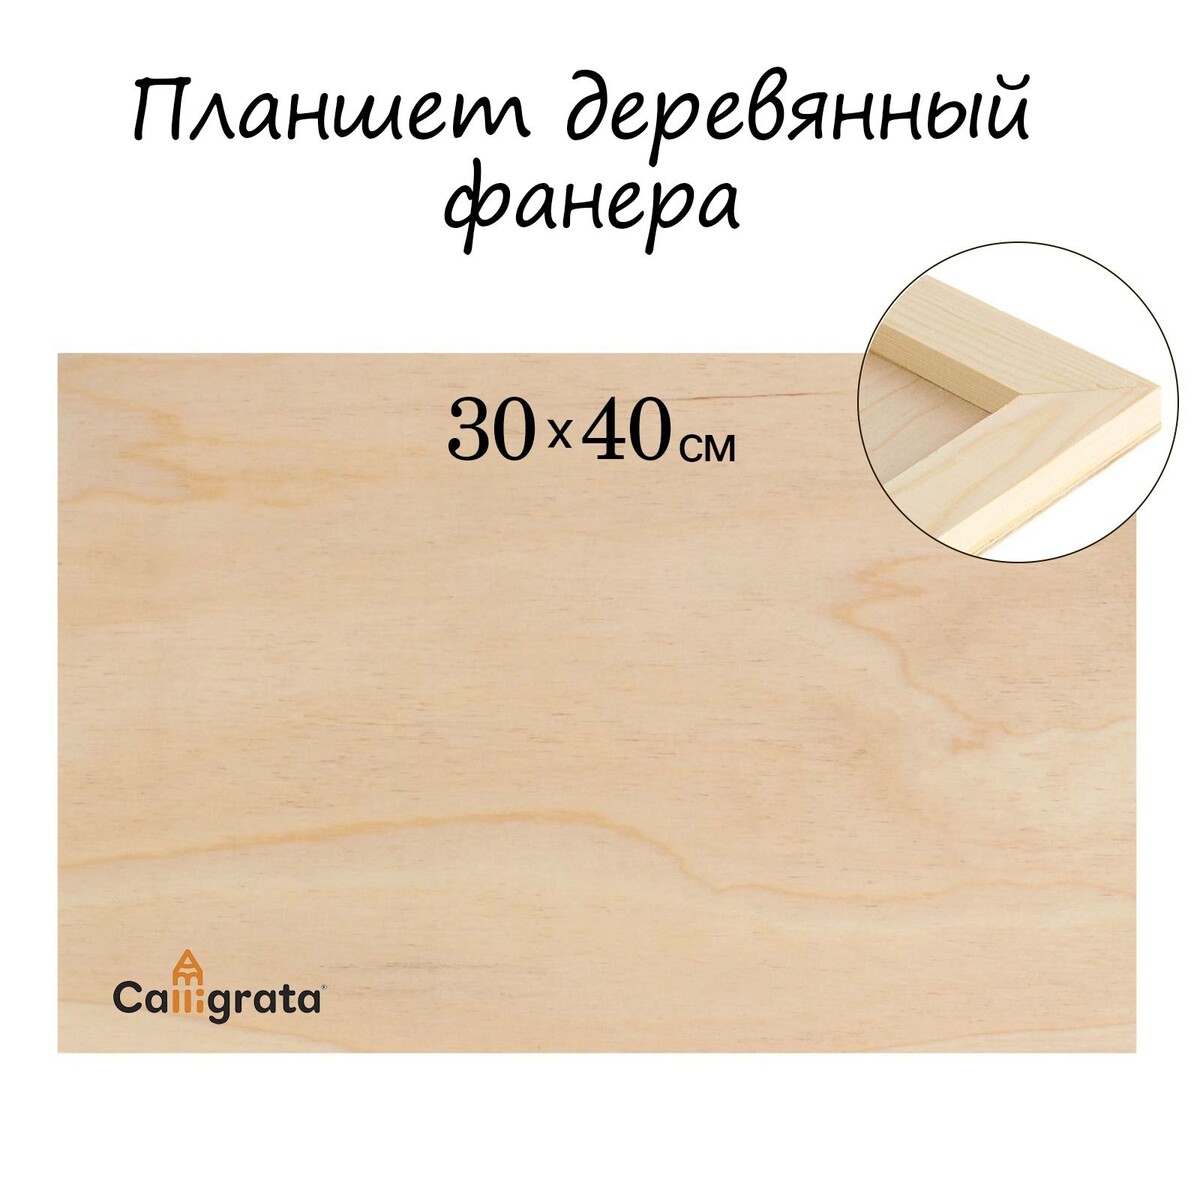 Планшет деревянный 30 х 40 х 2 см, фанера Calligrata 886555 0886555 - фото 1